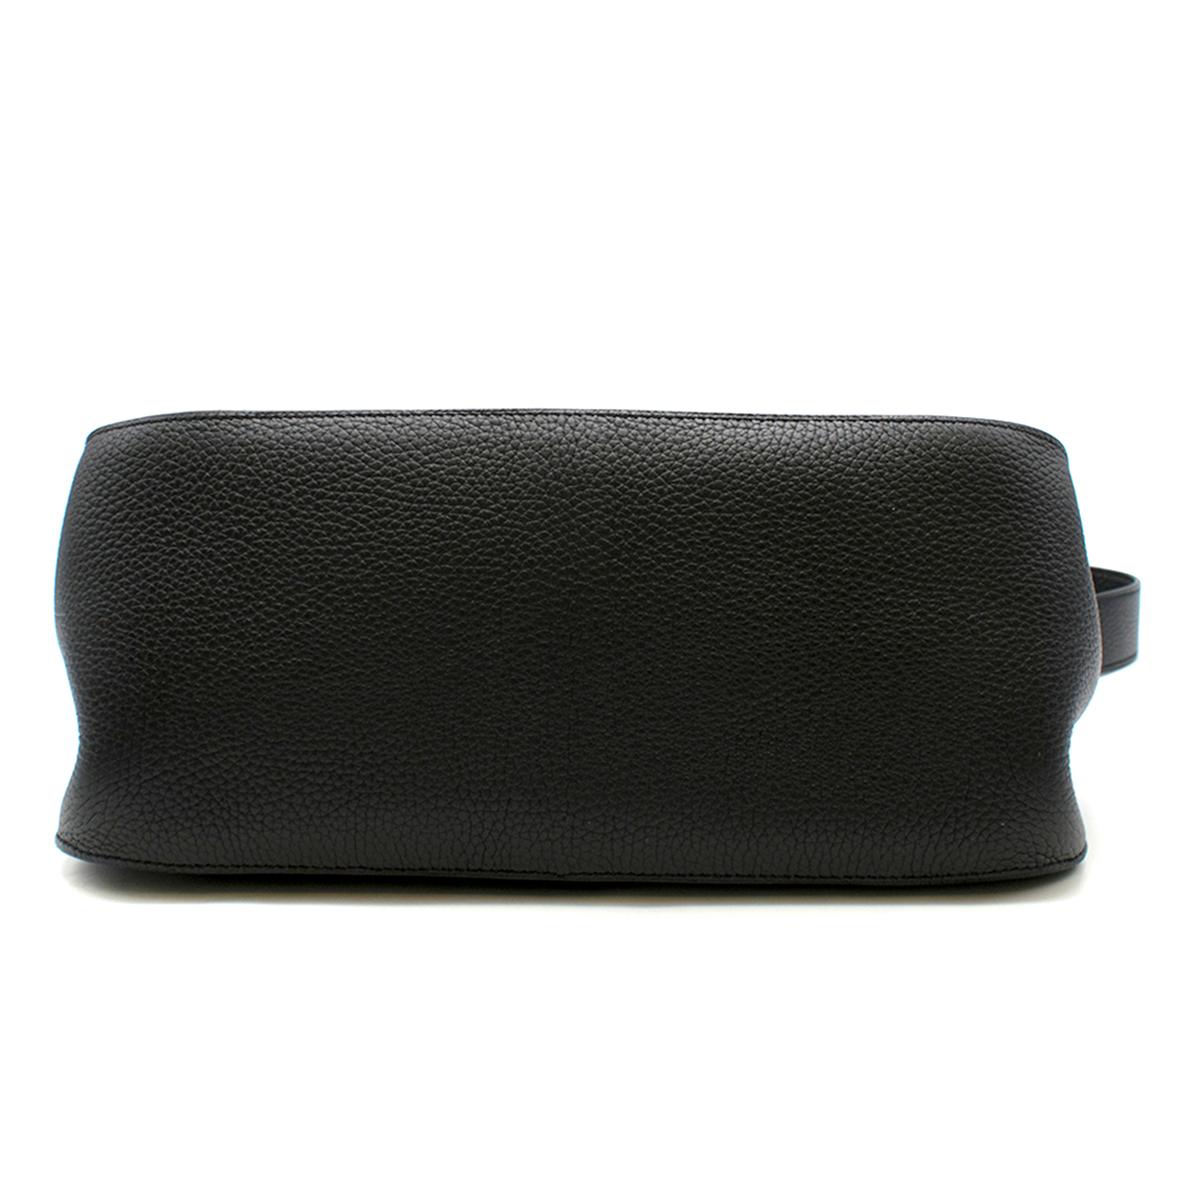 Hermes Black Togo Leather Jypsiere 34 Bag For Sale 1